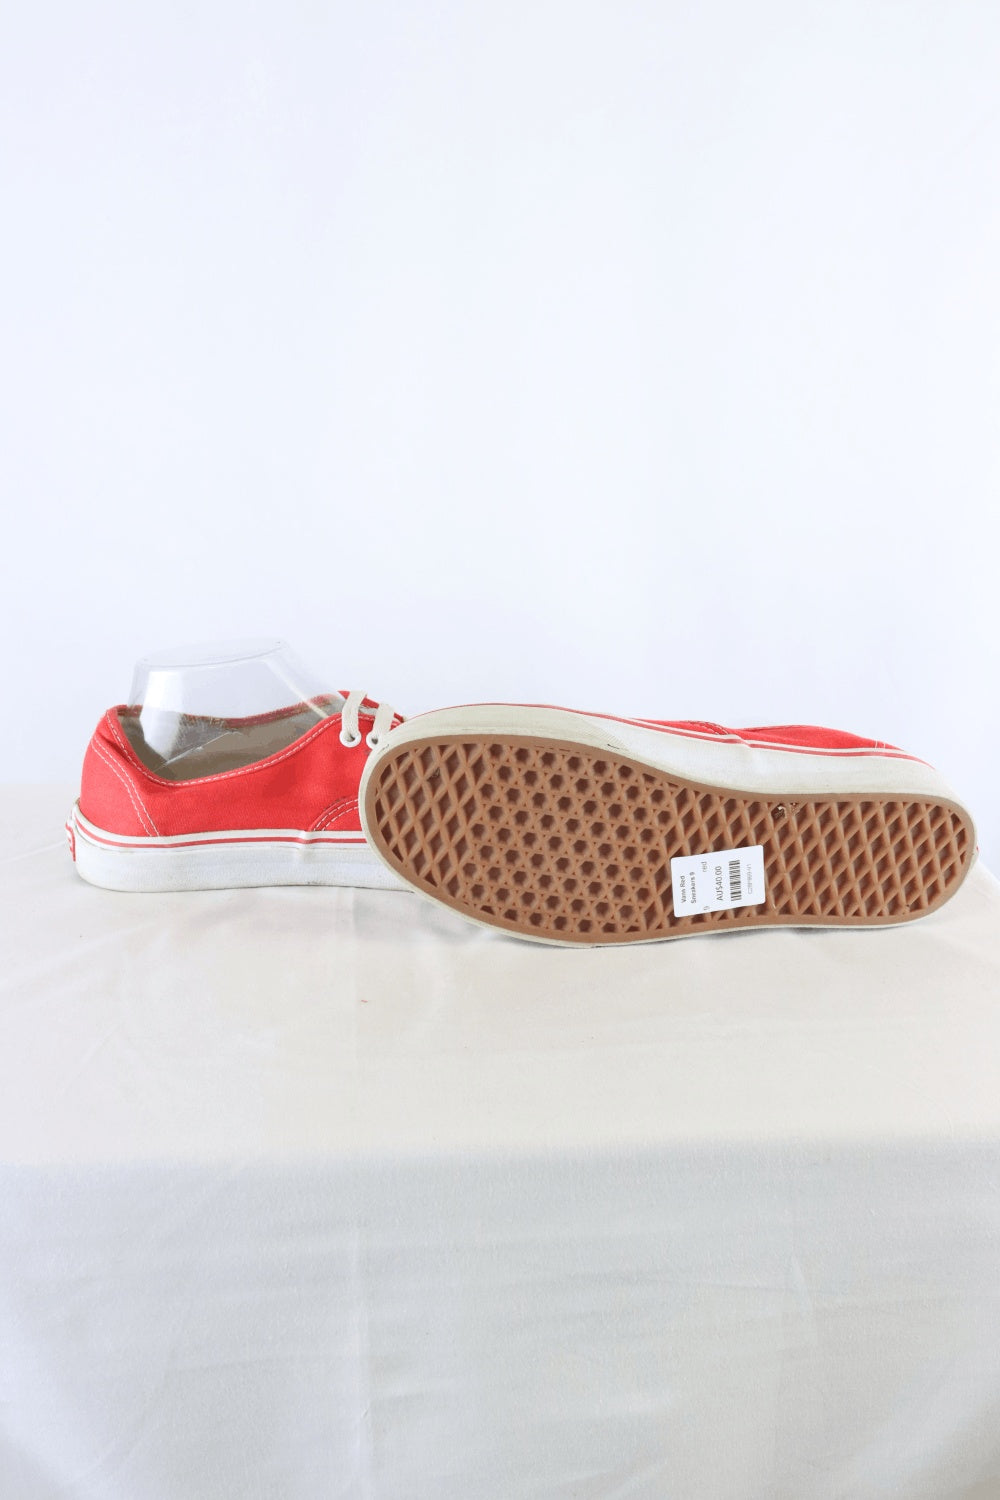 Vans Red Sneakers 9